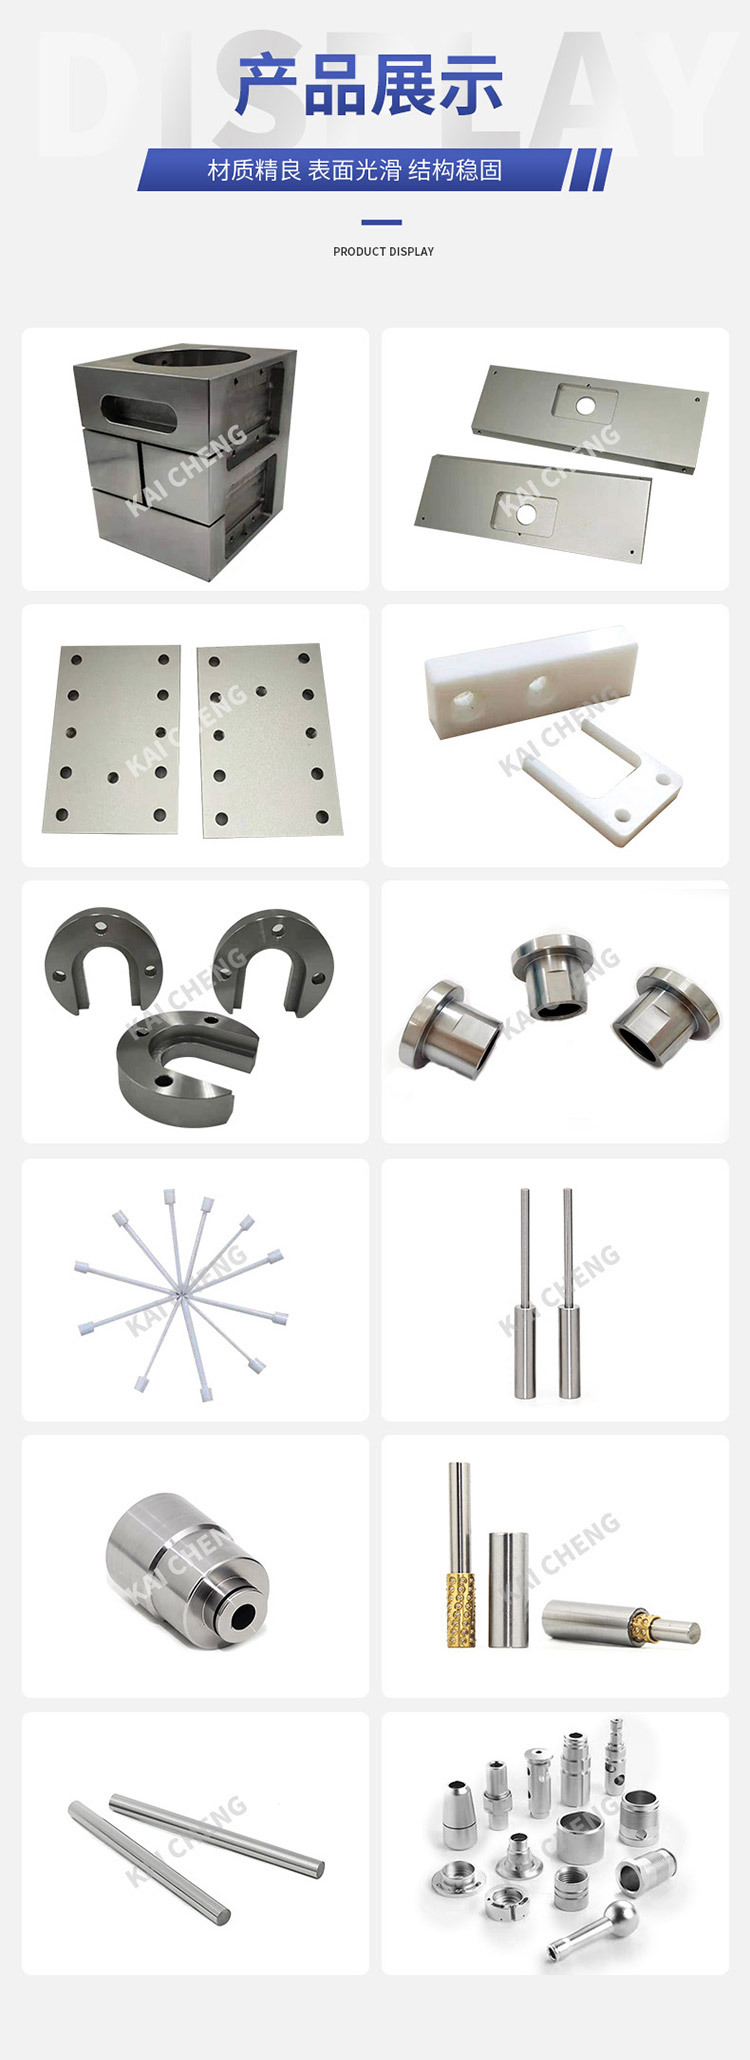 Manufacturers produce alumina ceramic accessories, precision ceramic components, industrial zirconia ceramic parts